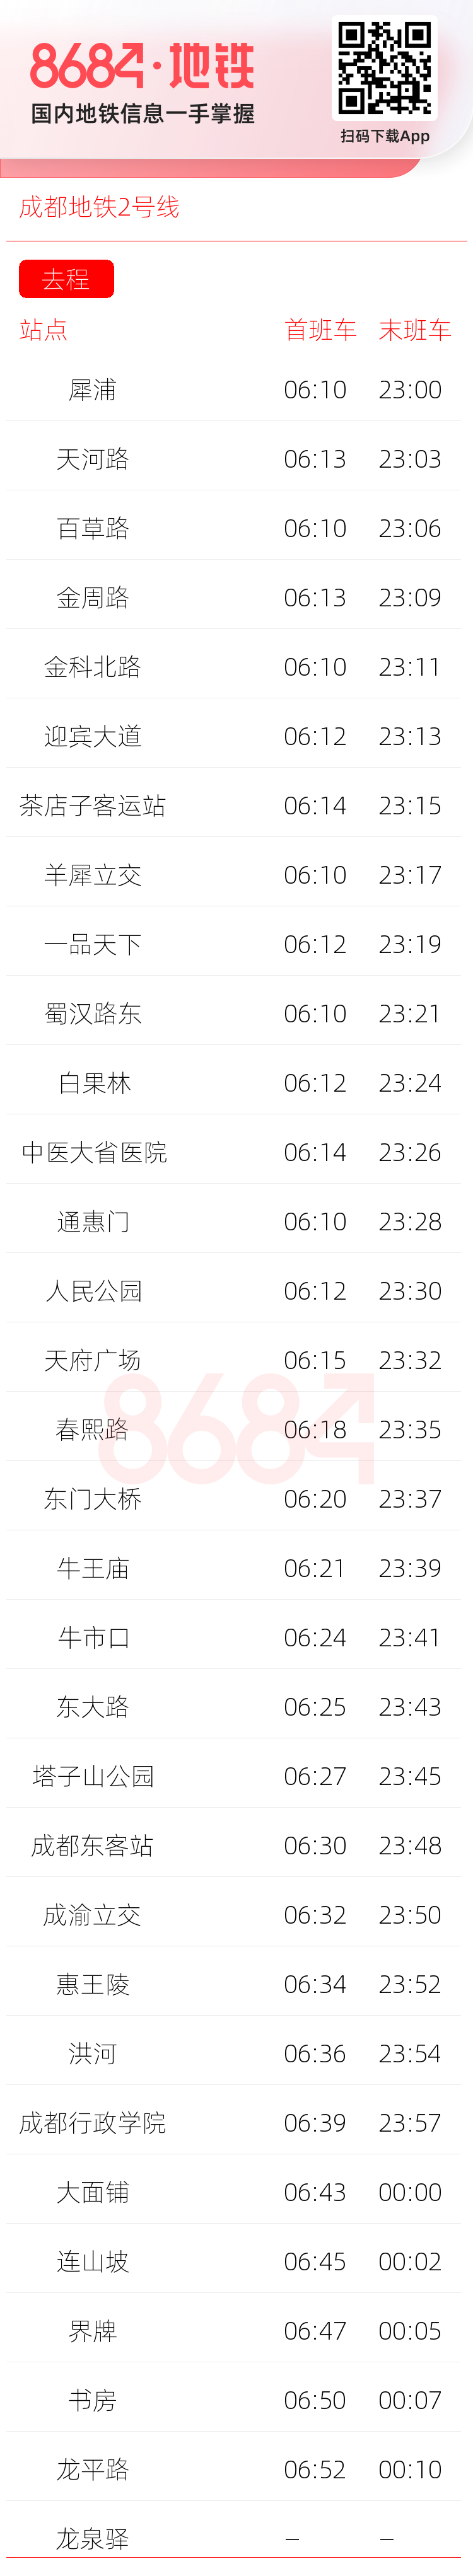 成都地铁2号线运营时间表